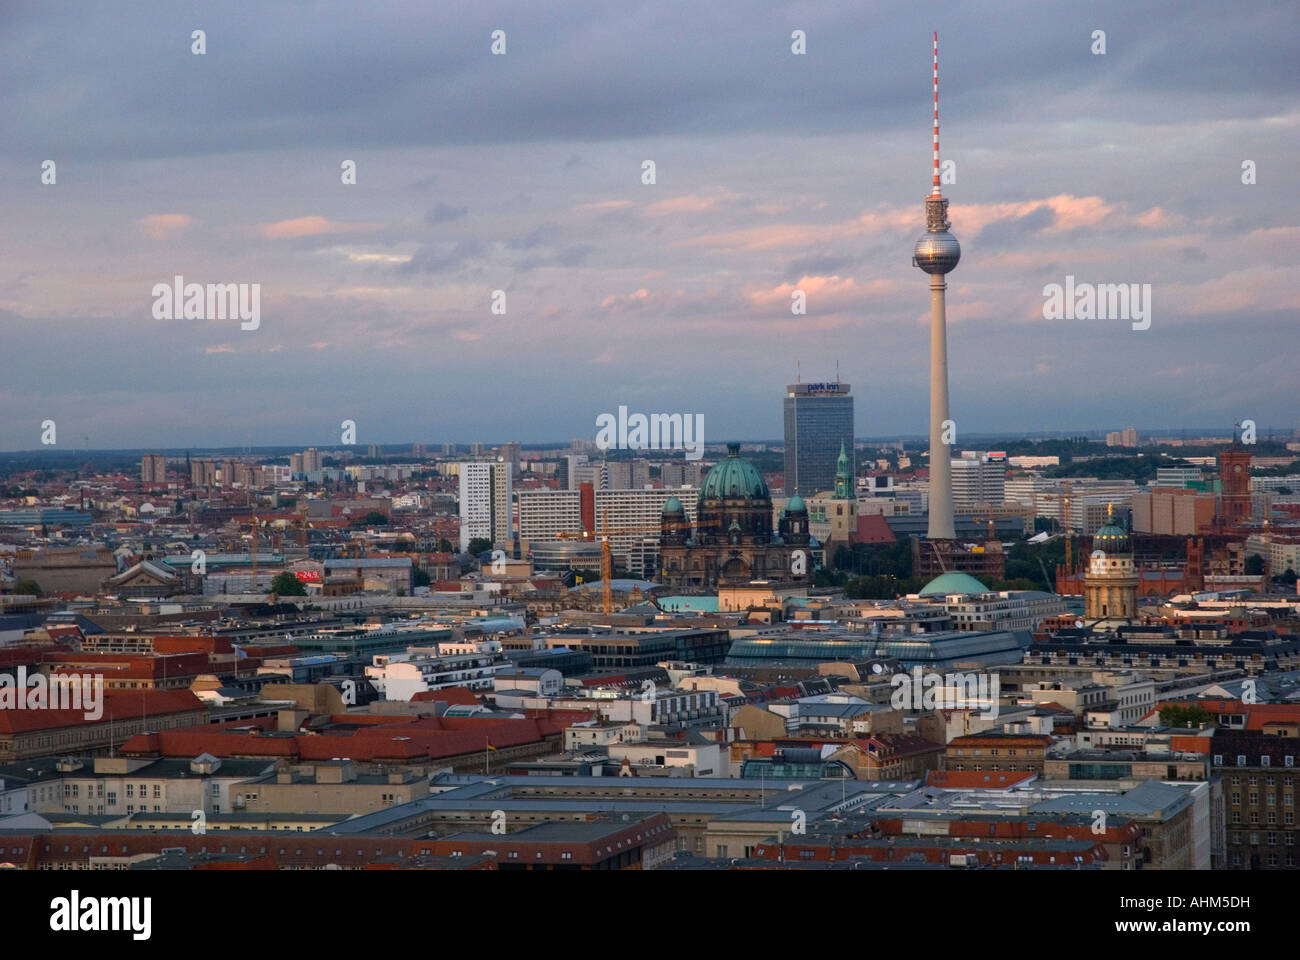 seeview berlin,torre de comunicaciones,alemania Stock Photo